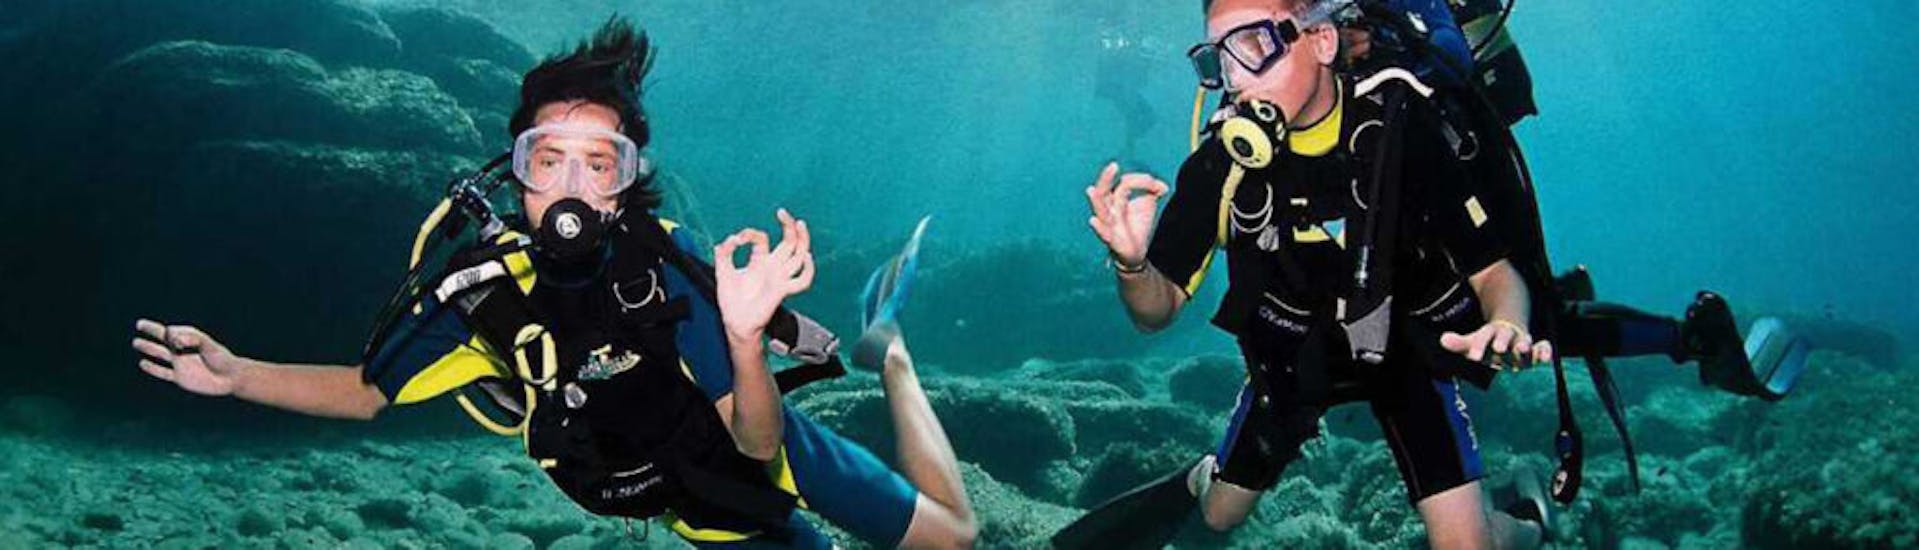 Foto de dos buceadores haciendo lenguaje de signos bajo el agua durante el curso PADI Scuba Diver en Ibiza para principiantes por Arenal Diving & Boat Trips Ibiza.